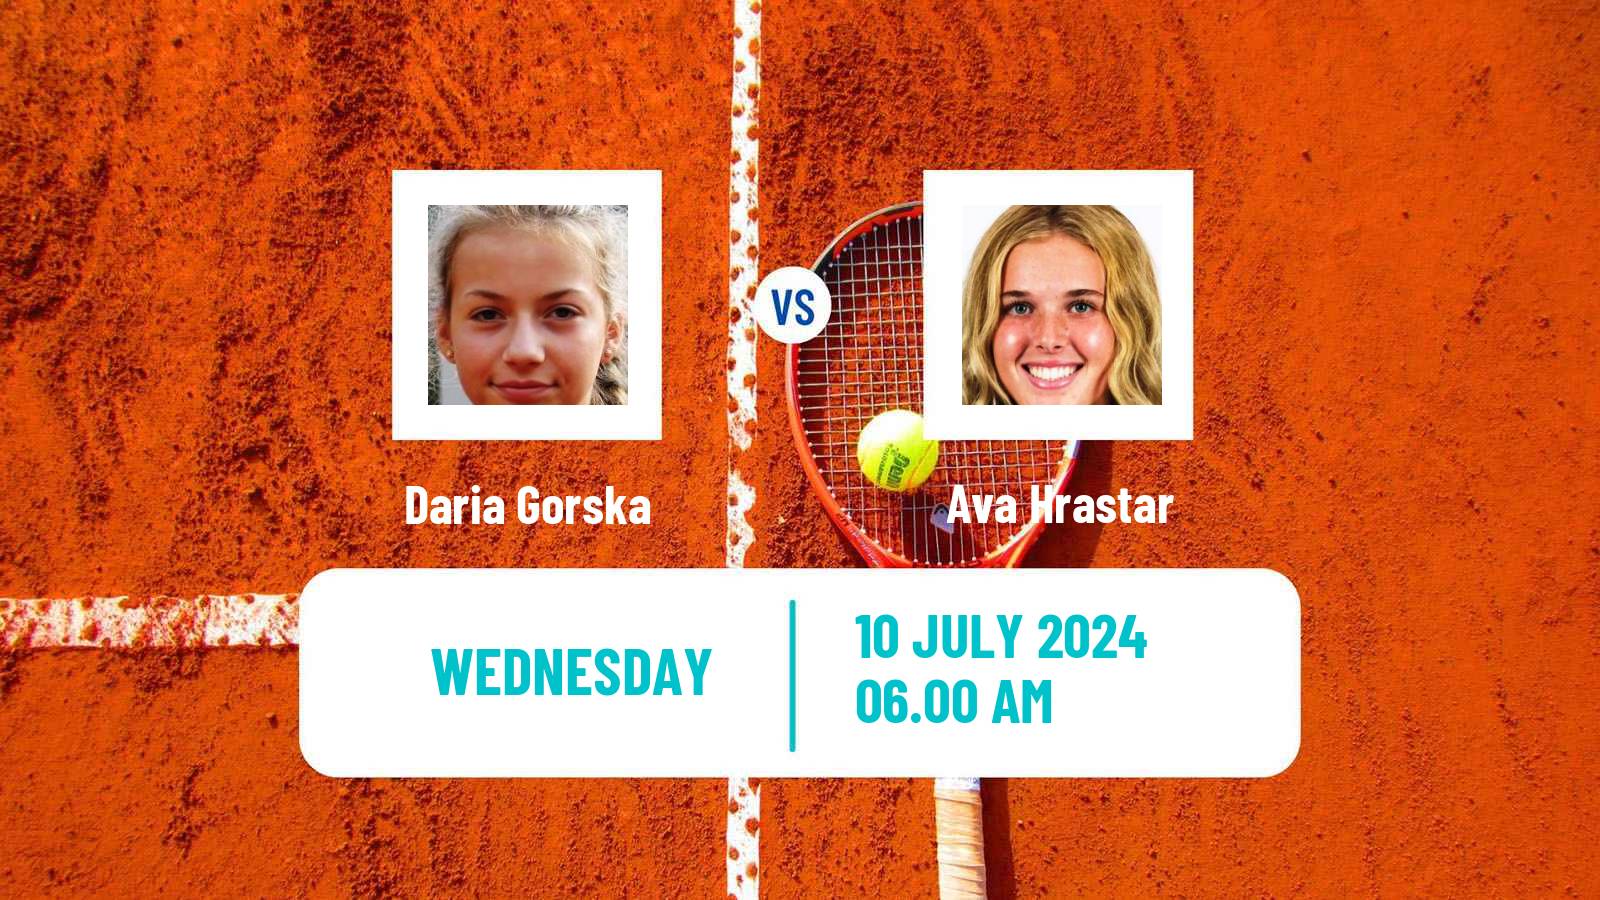 Tennis ITF W15 Grodzisk Mazowiecki Women Daria Gorska - Ava Hrastar